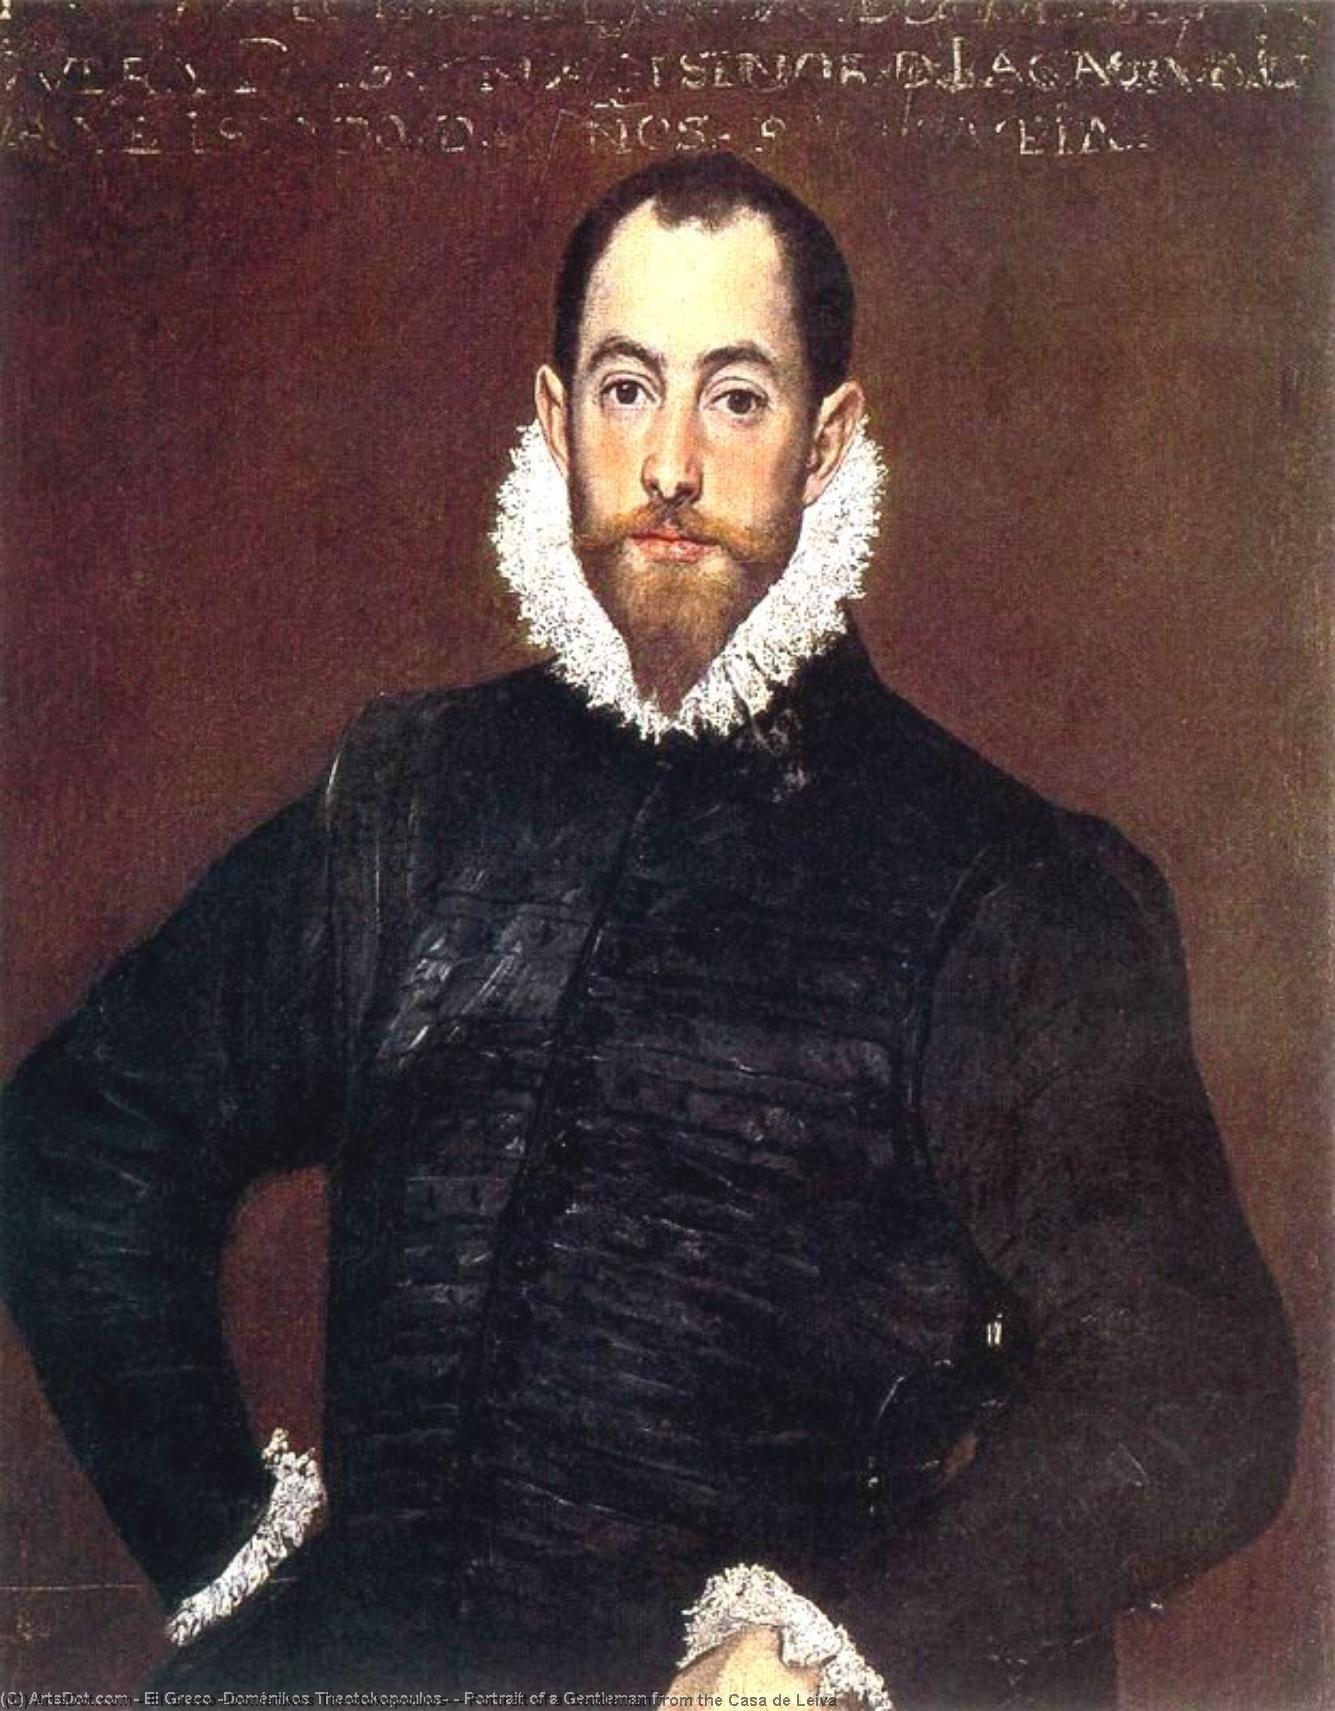 WikiOO.org - Encyclopedia of Fine Arts - Malba, Artwork El Greco (Doménikos Theotokopoulos) - Portrait of a Gentleman from the Casa de Leiva